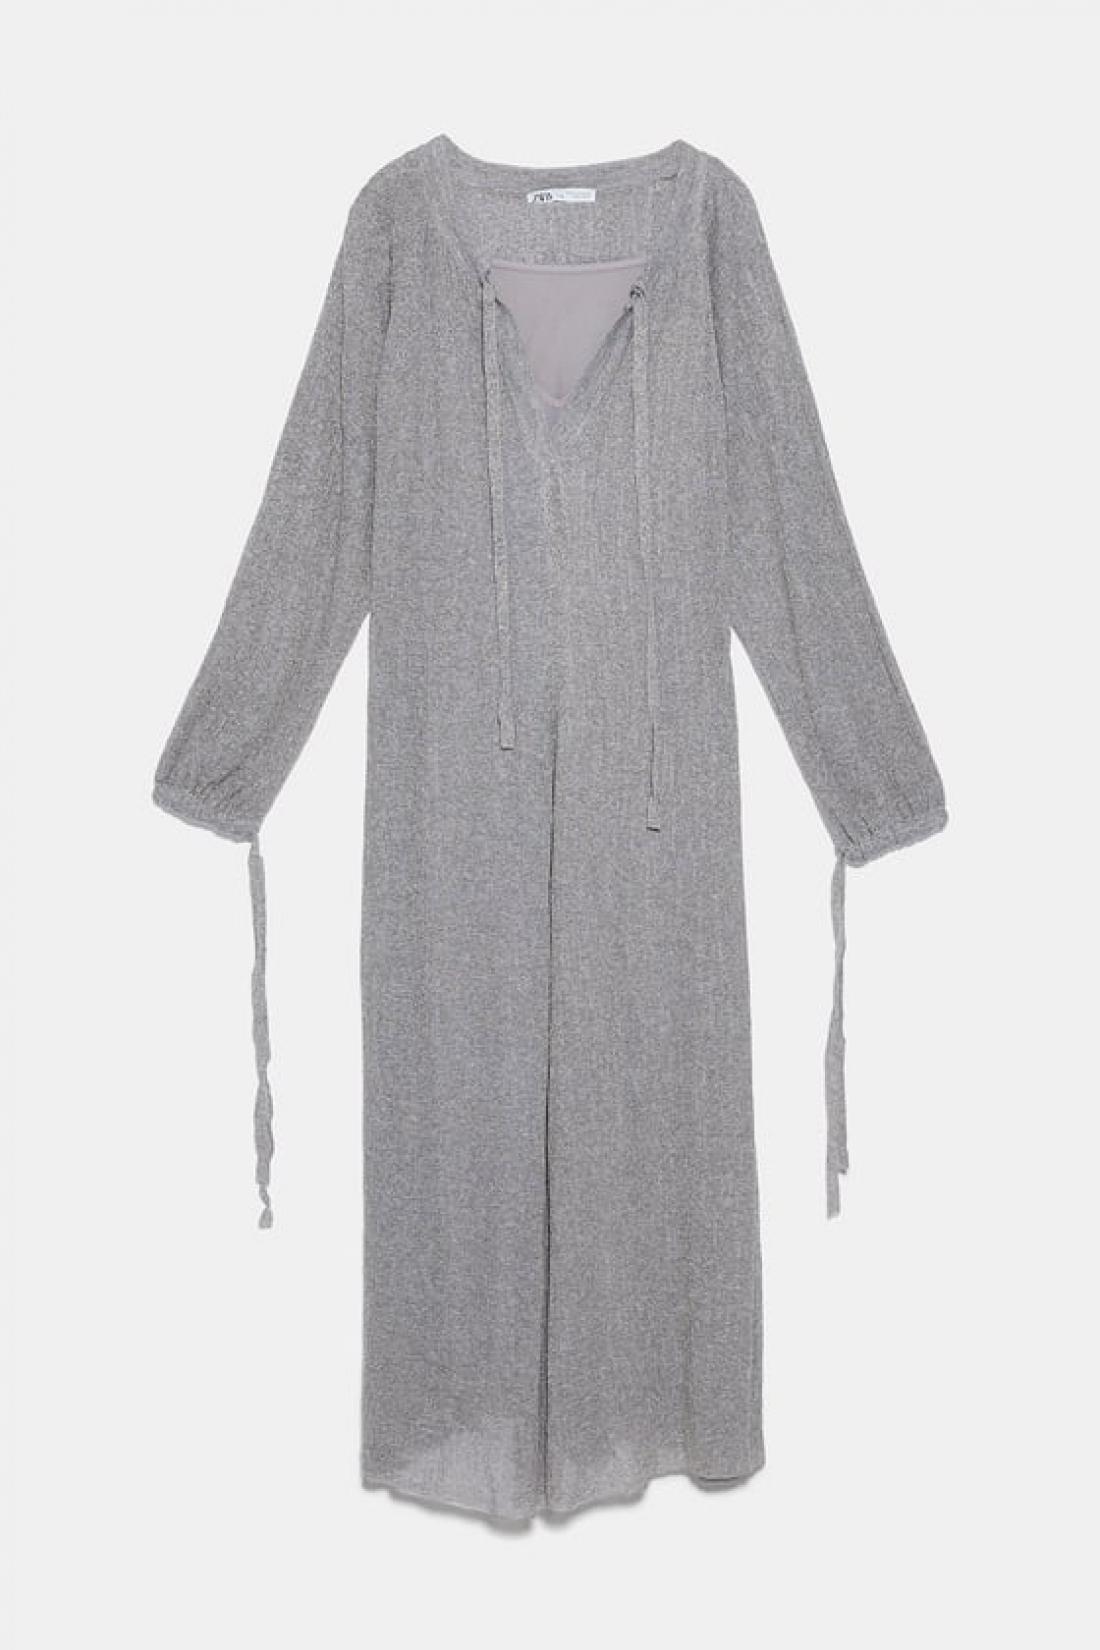 Obleka Zara, 59,95 evra